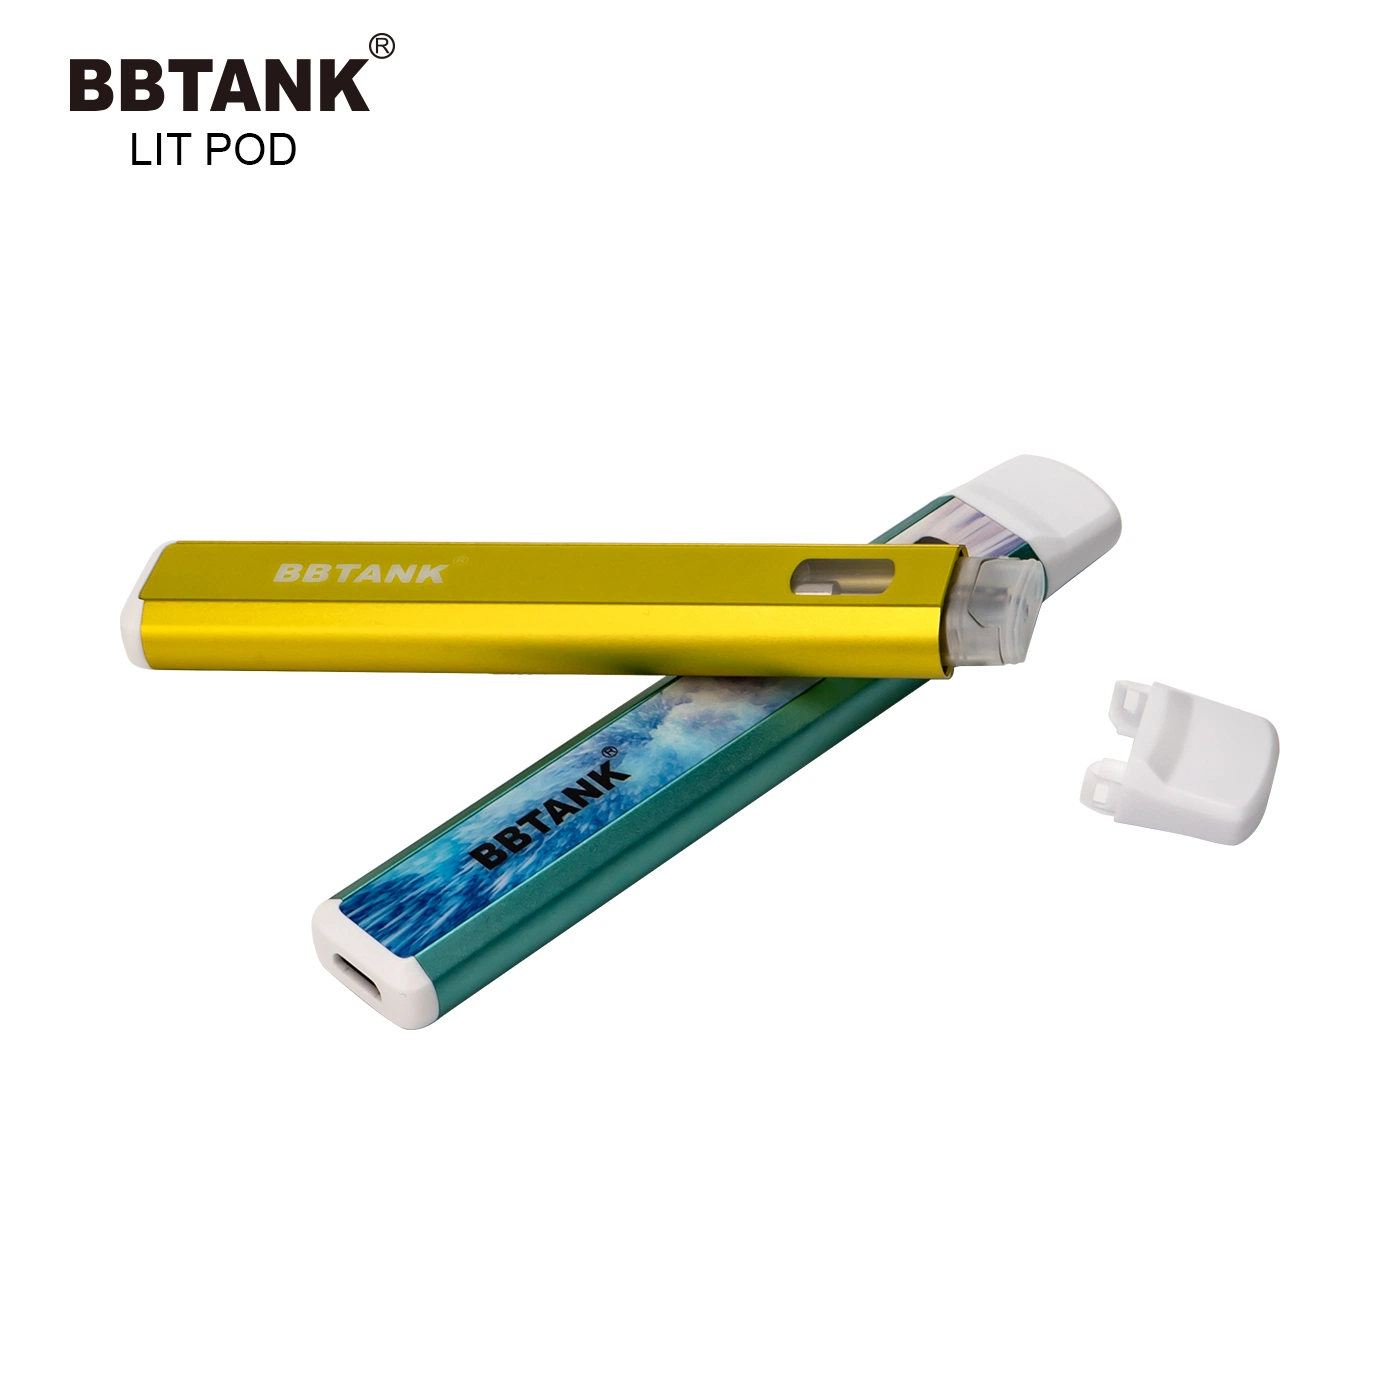 Mejor venta de lápiz desechable en nosotros mercado dos caras de VAPE disponible para personalización al por mayor I VAPE Bbtank Lit Pod